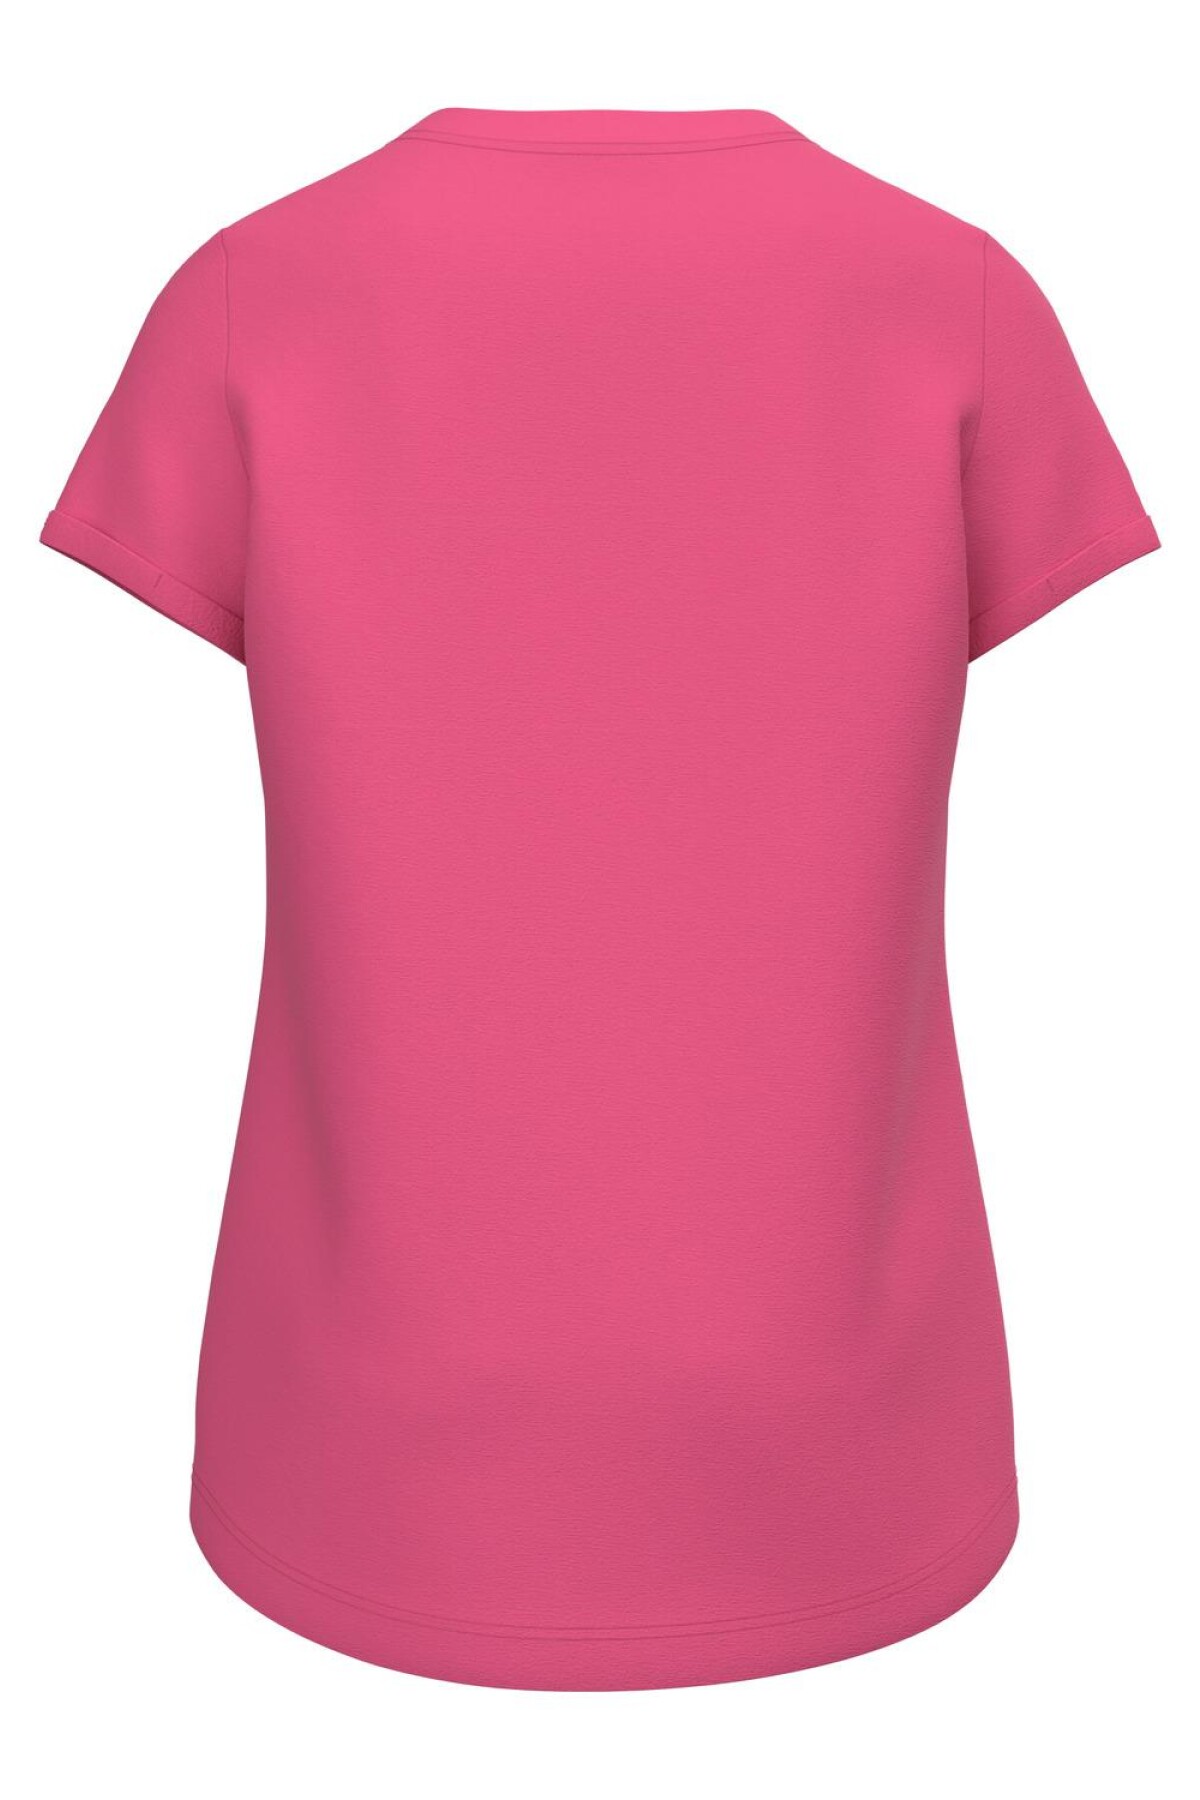 Camiseta Vix Pink Flambé